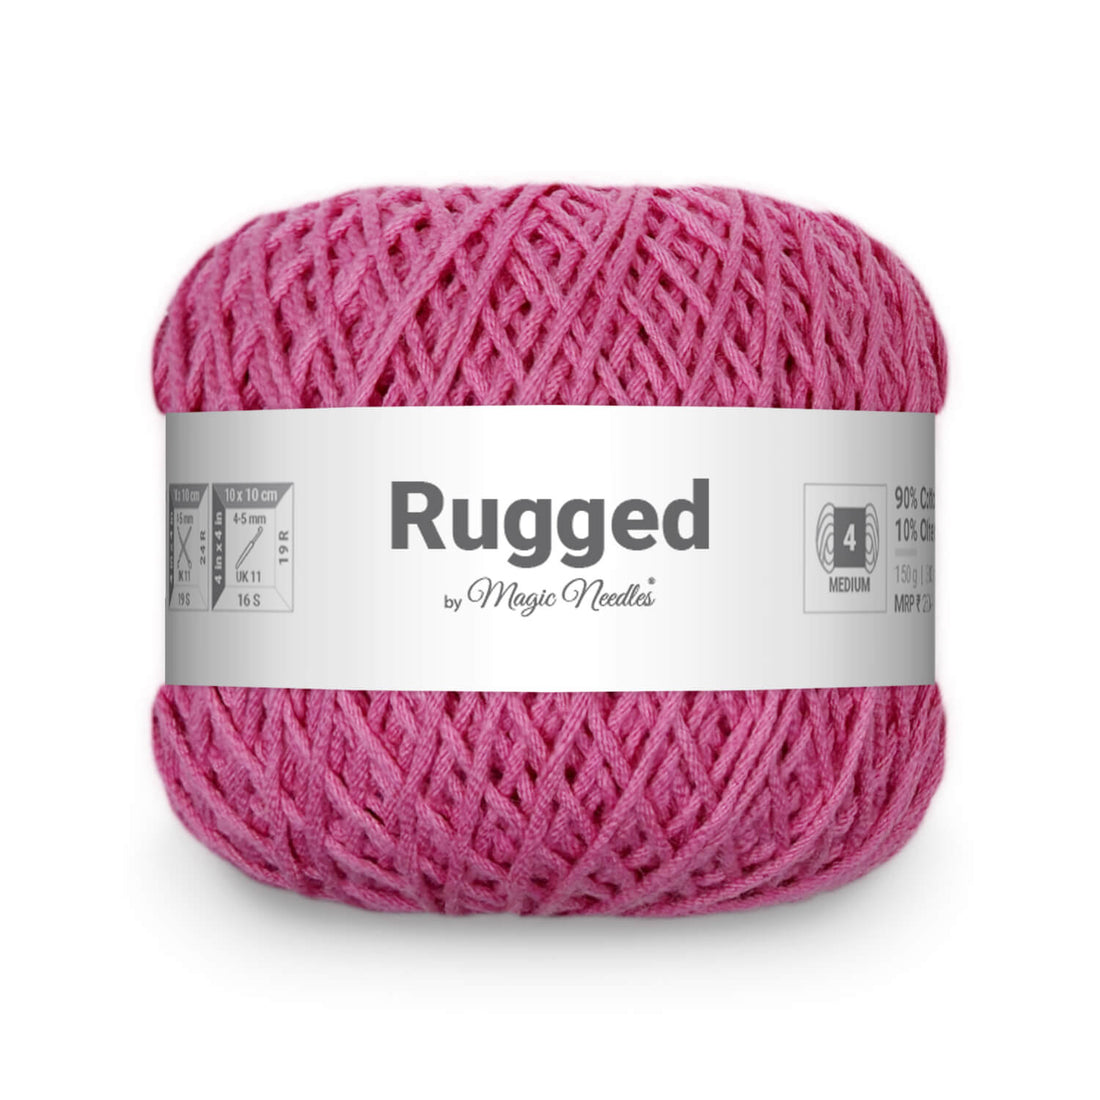 Rugged Yarn - Onion Pink 20